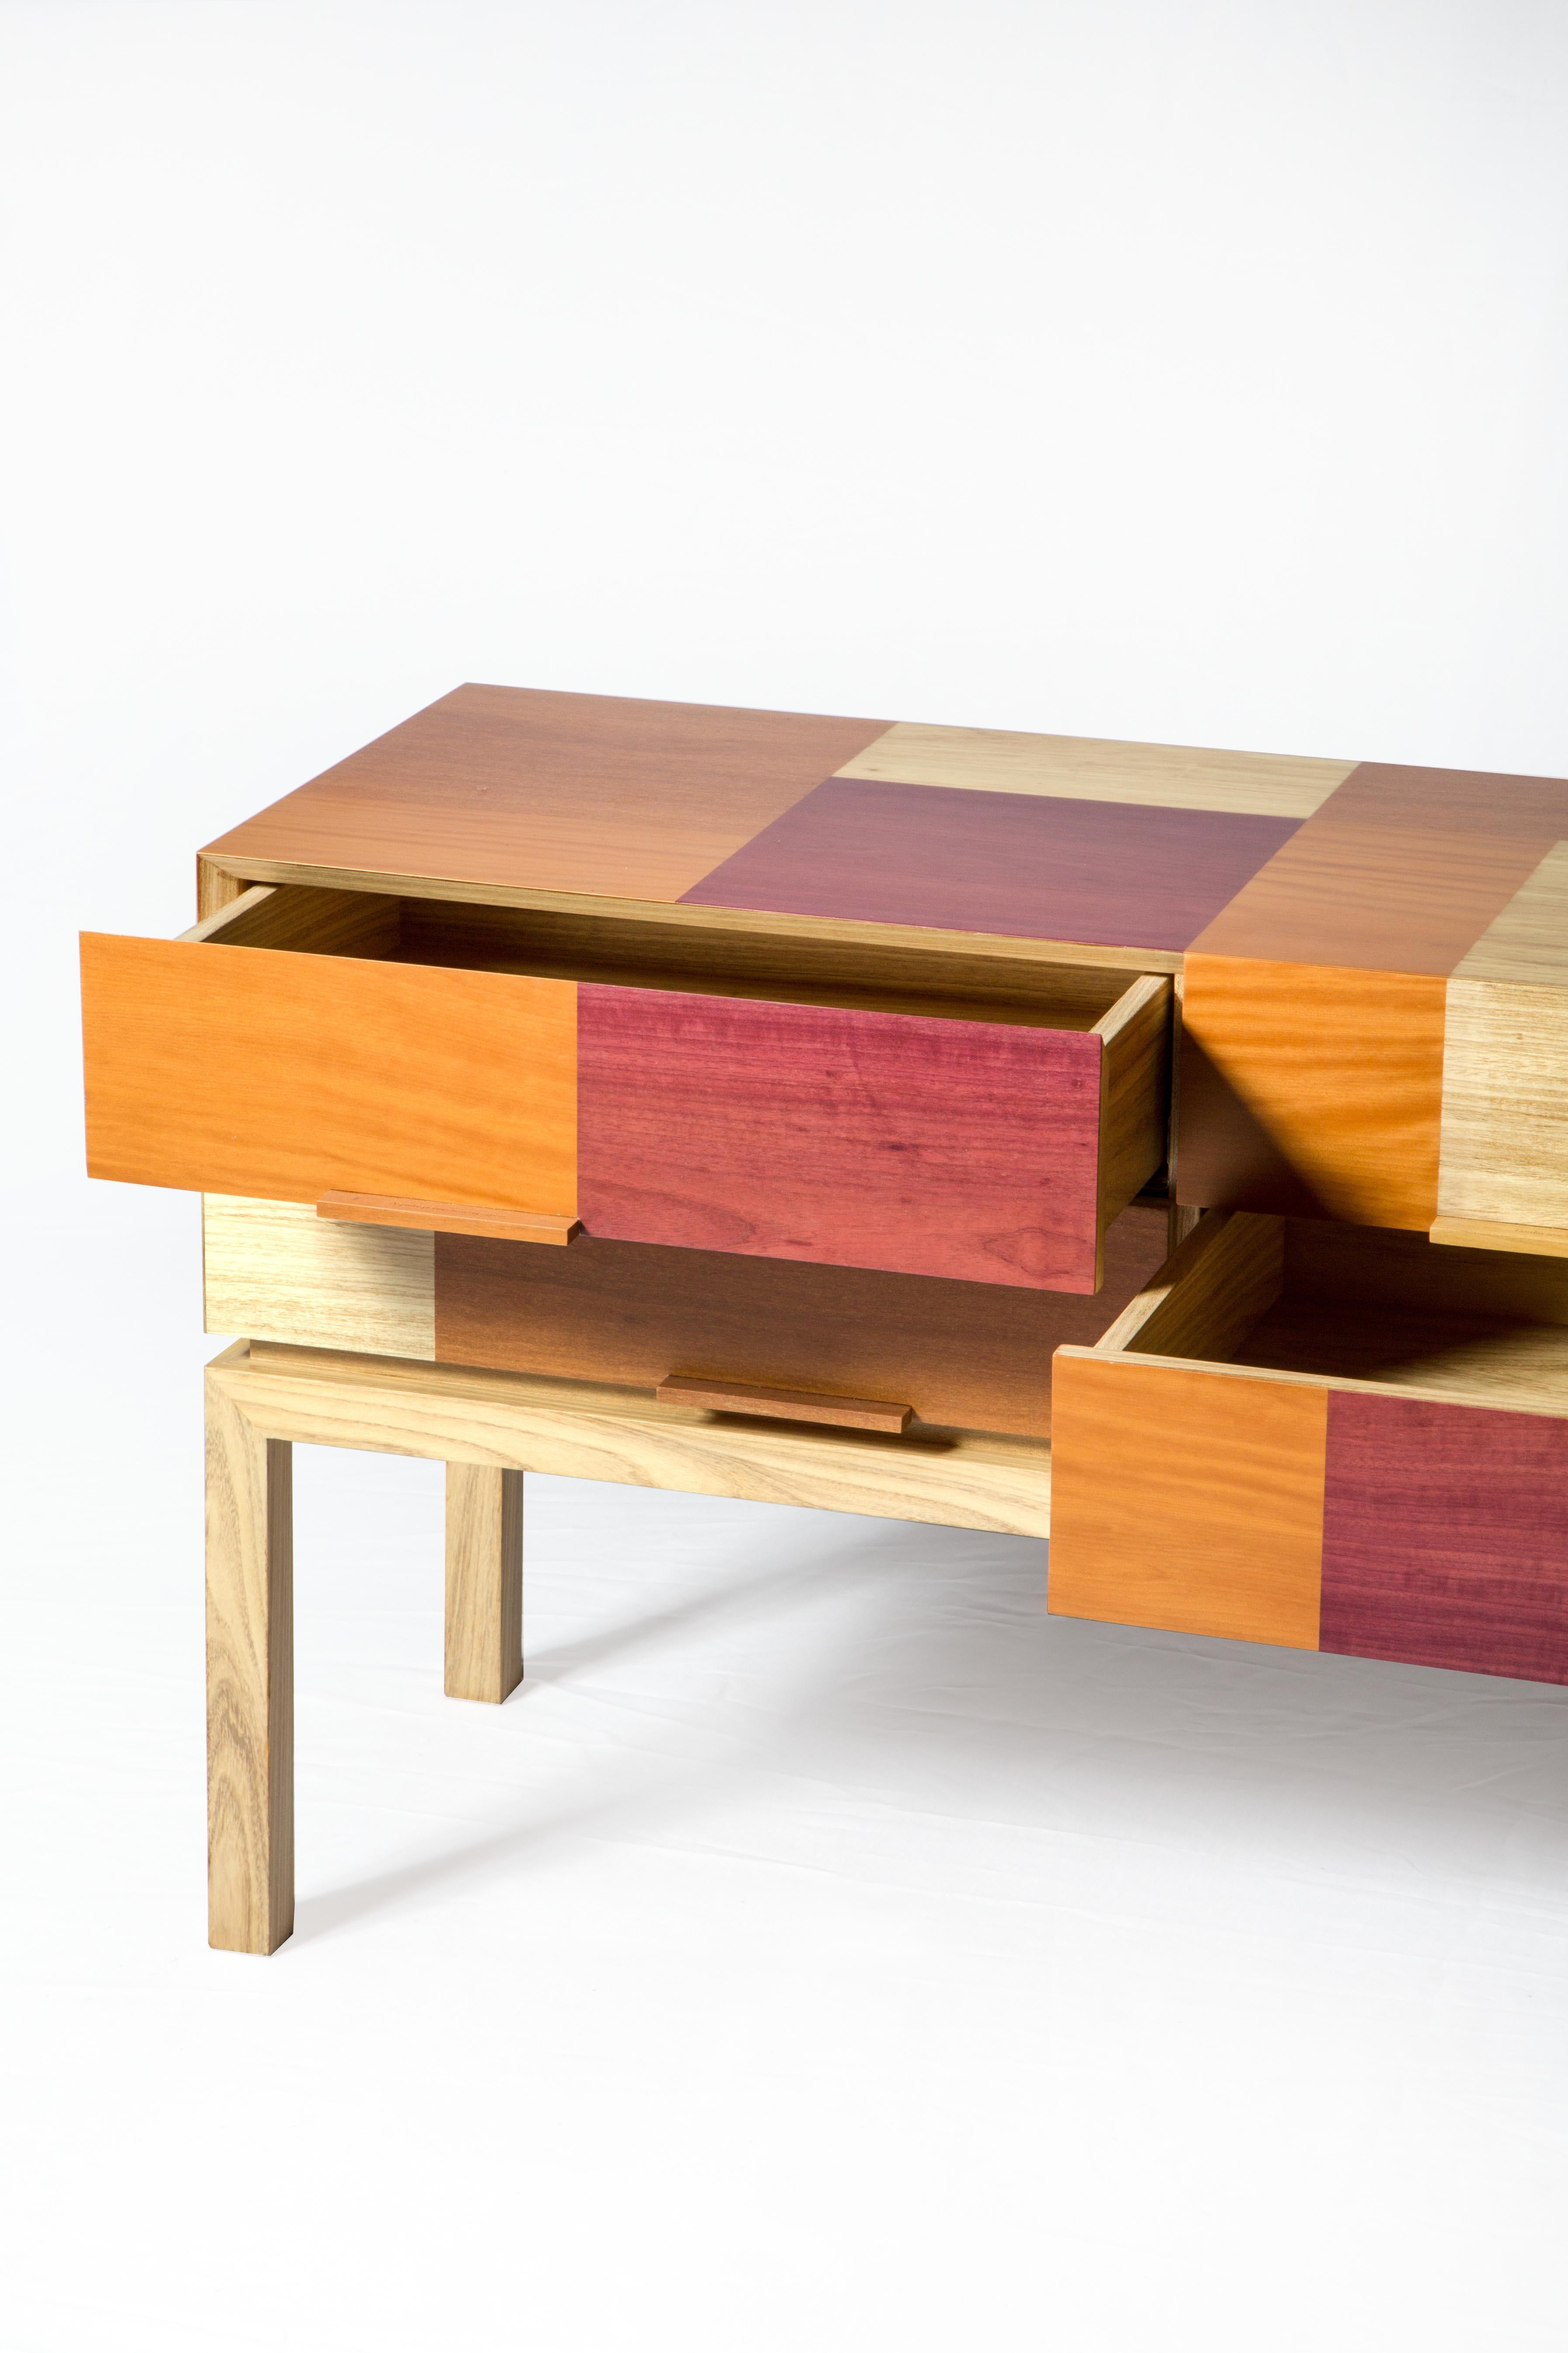 Woodwork Modern Sideboard By Ivan Rezende in Brazilian Wood  For Sale